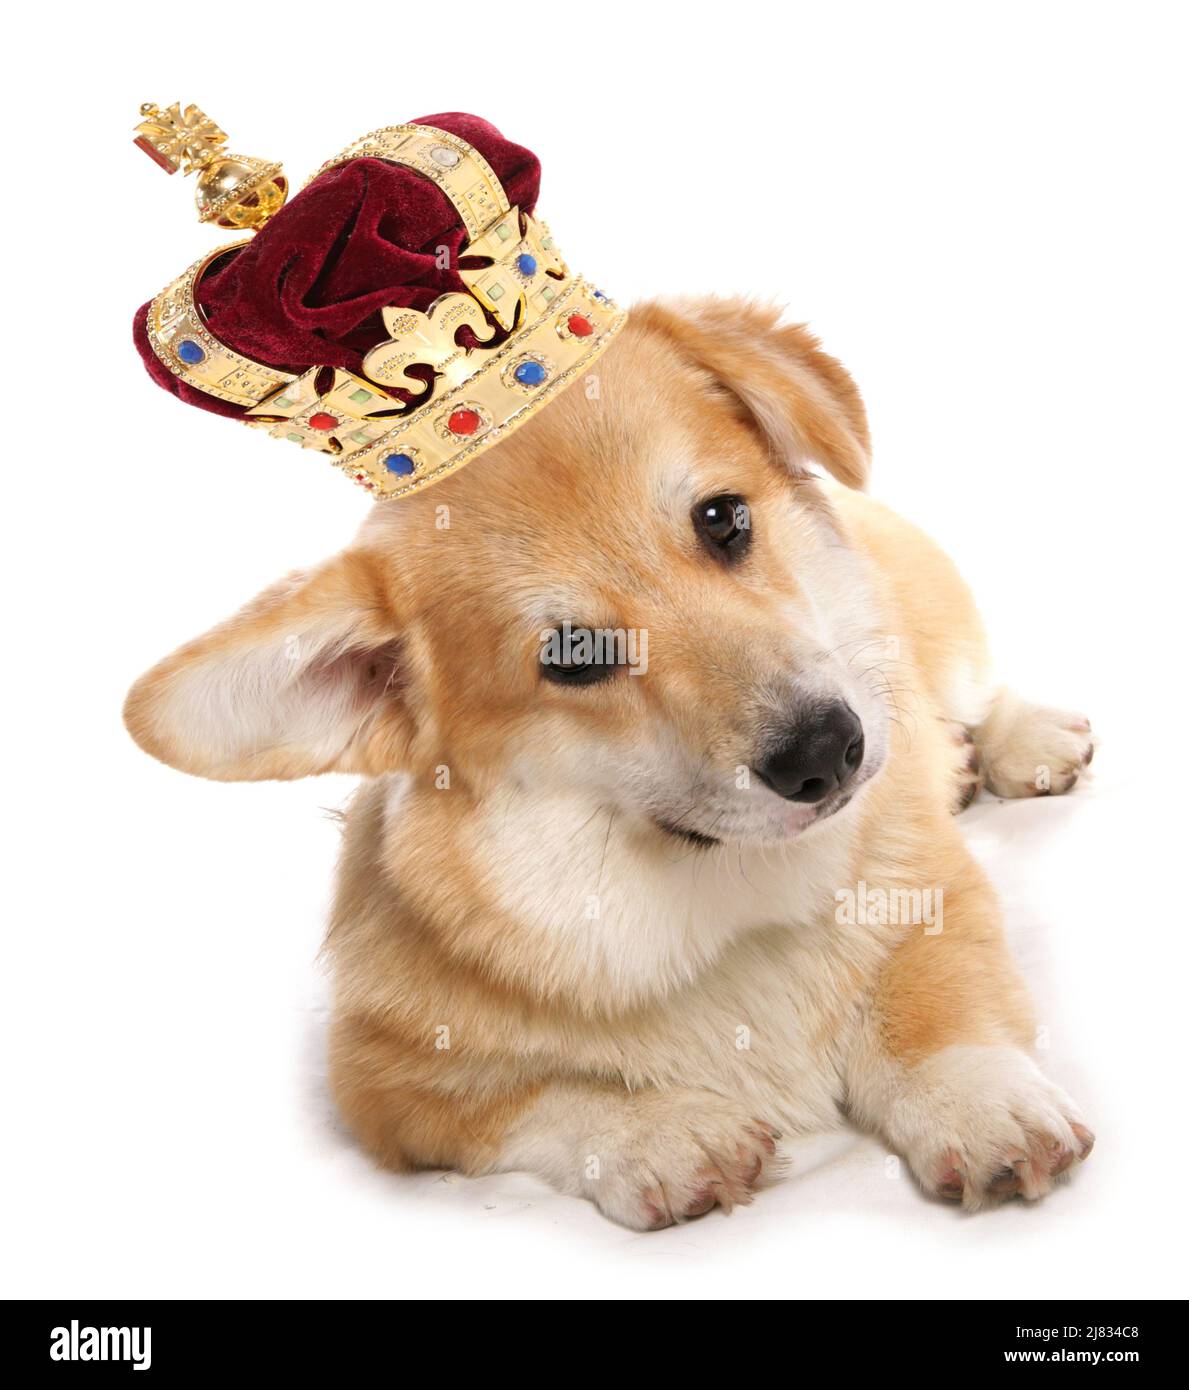 Cane Corgi che indossa una corona per la celebrazione del giubileo reale ritagliato su sfondo bianco Foto Stock